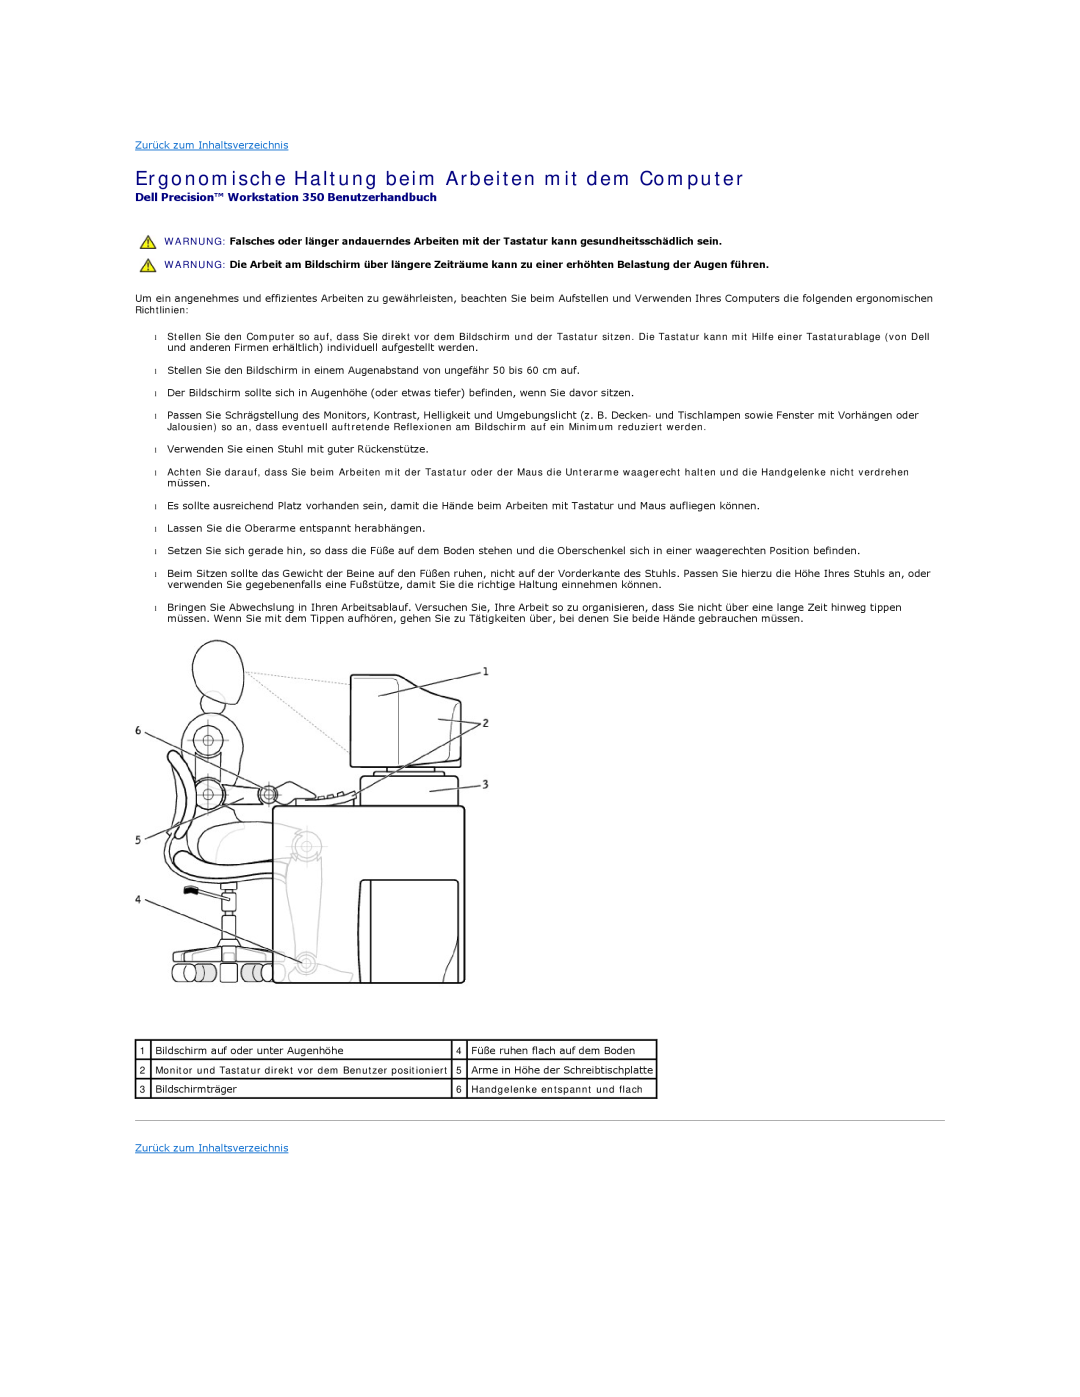 Dell manual Dell Precision Workstation 350 Benutzerhandbuch, Zurück zum Inhaltsverzeichnis 